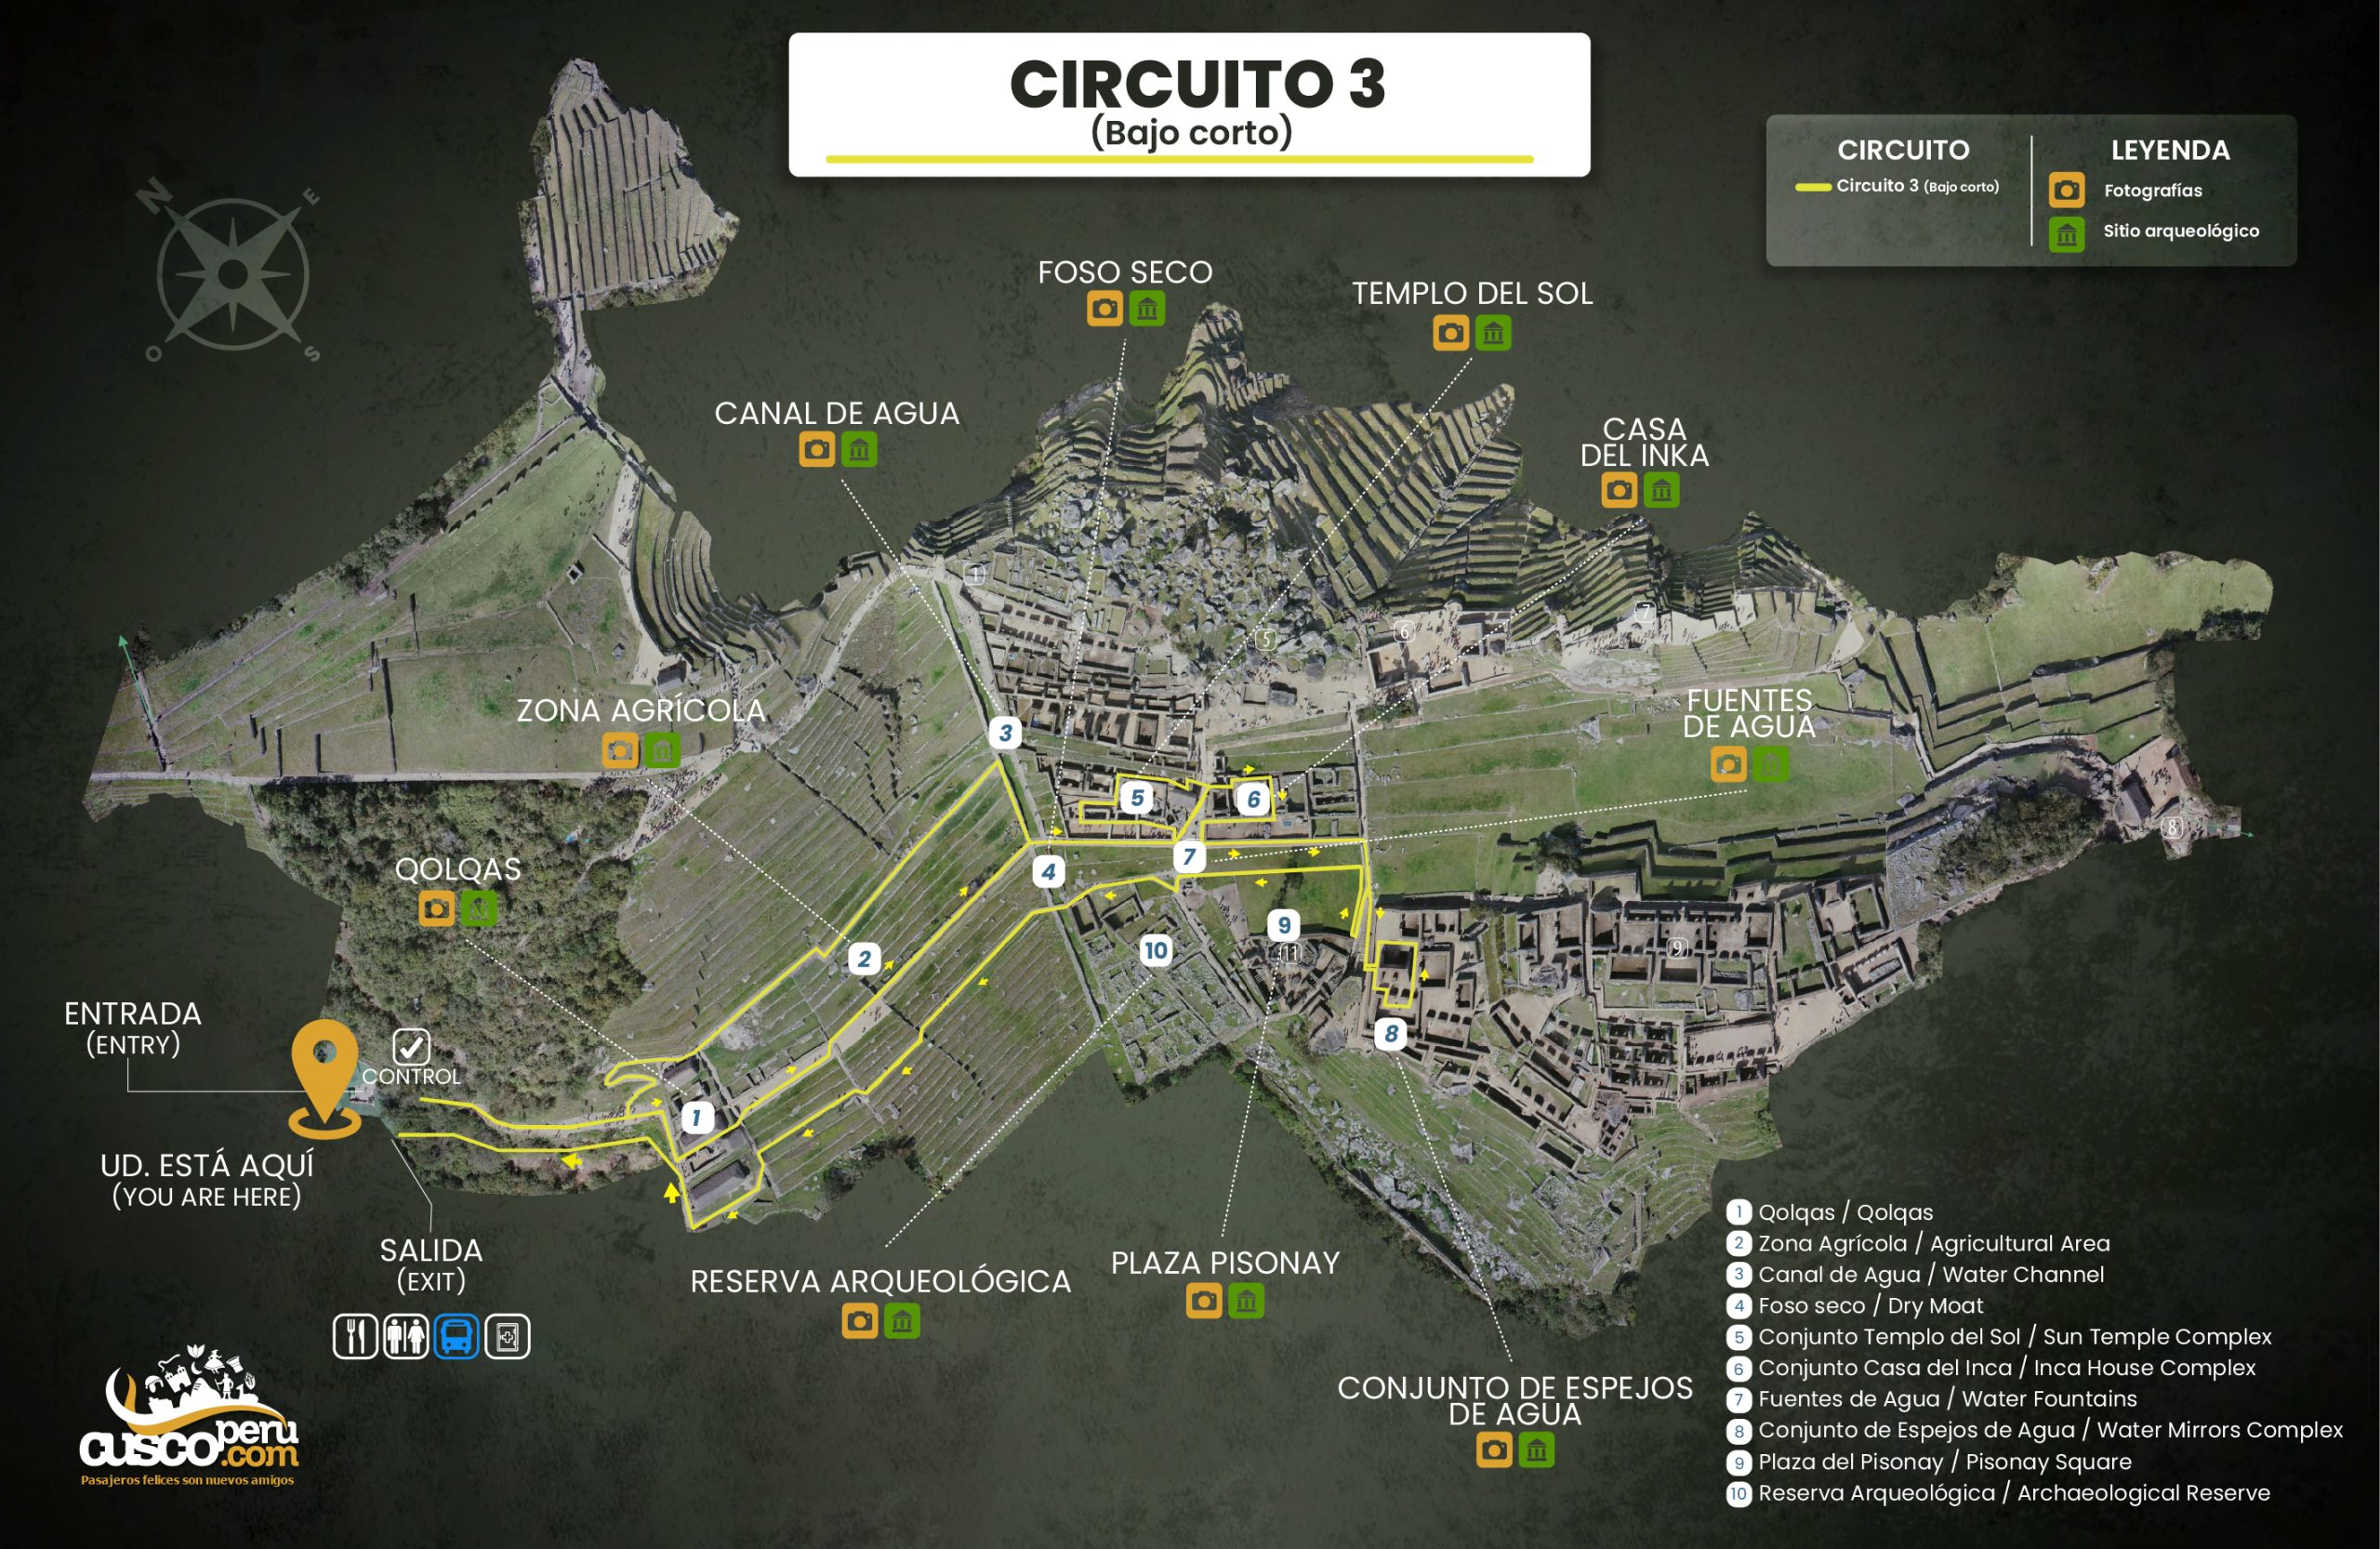 Mapa do Circuito 3 de Machu Picchu. Fonte: CuscoPeru.com